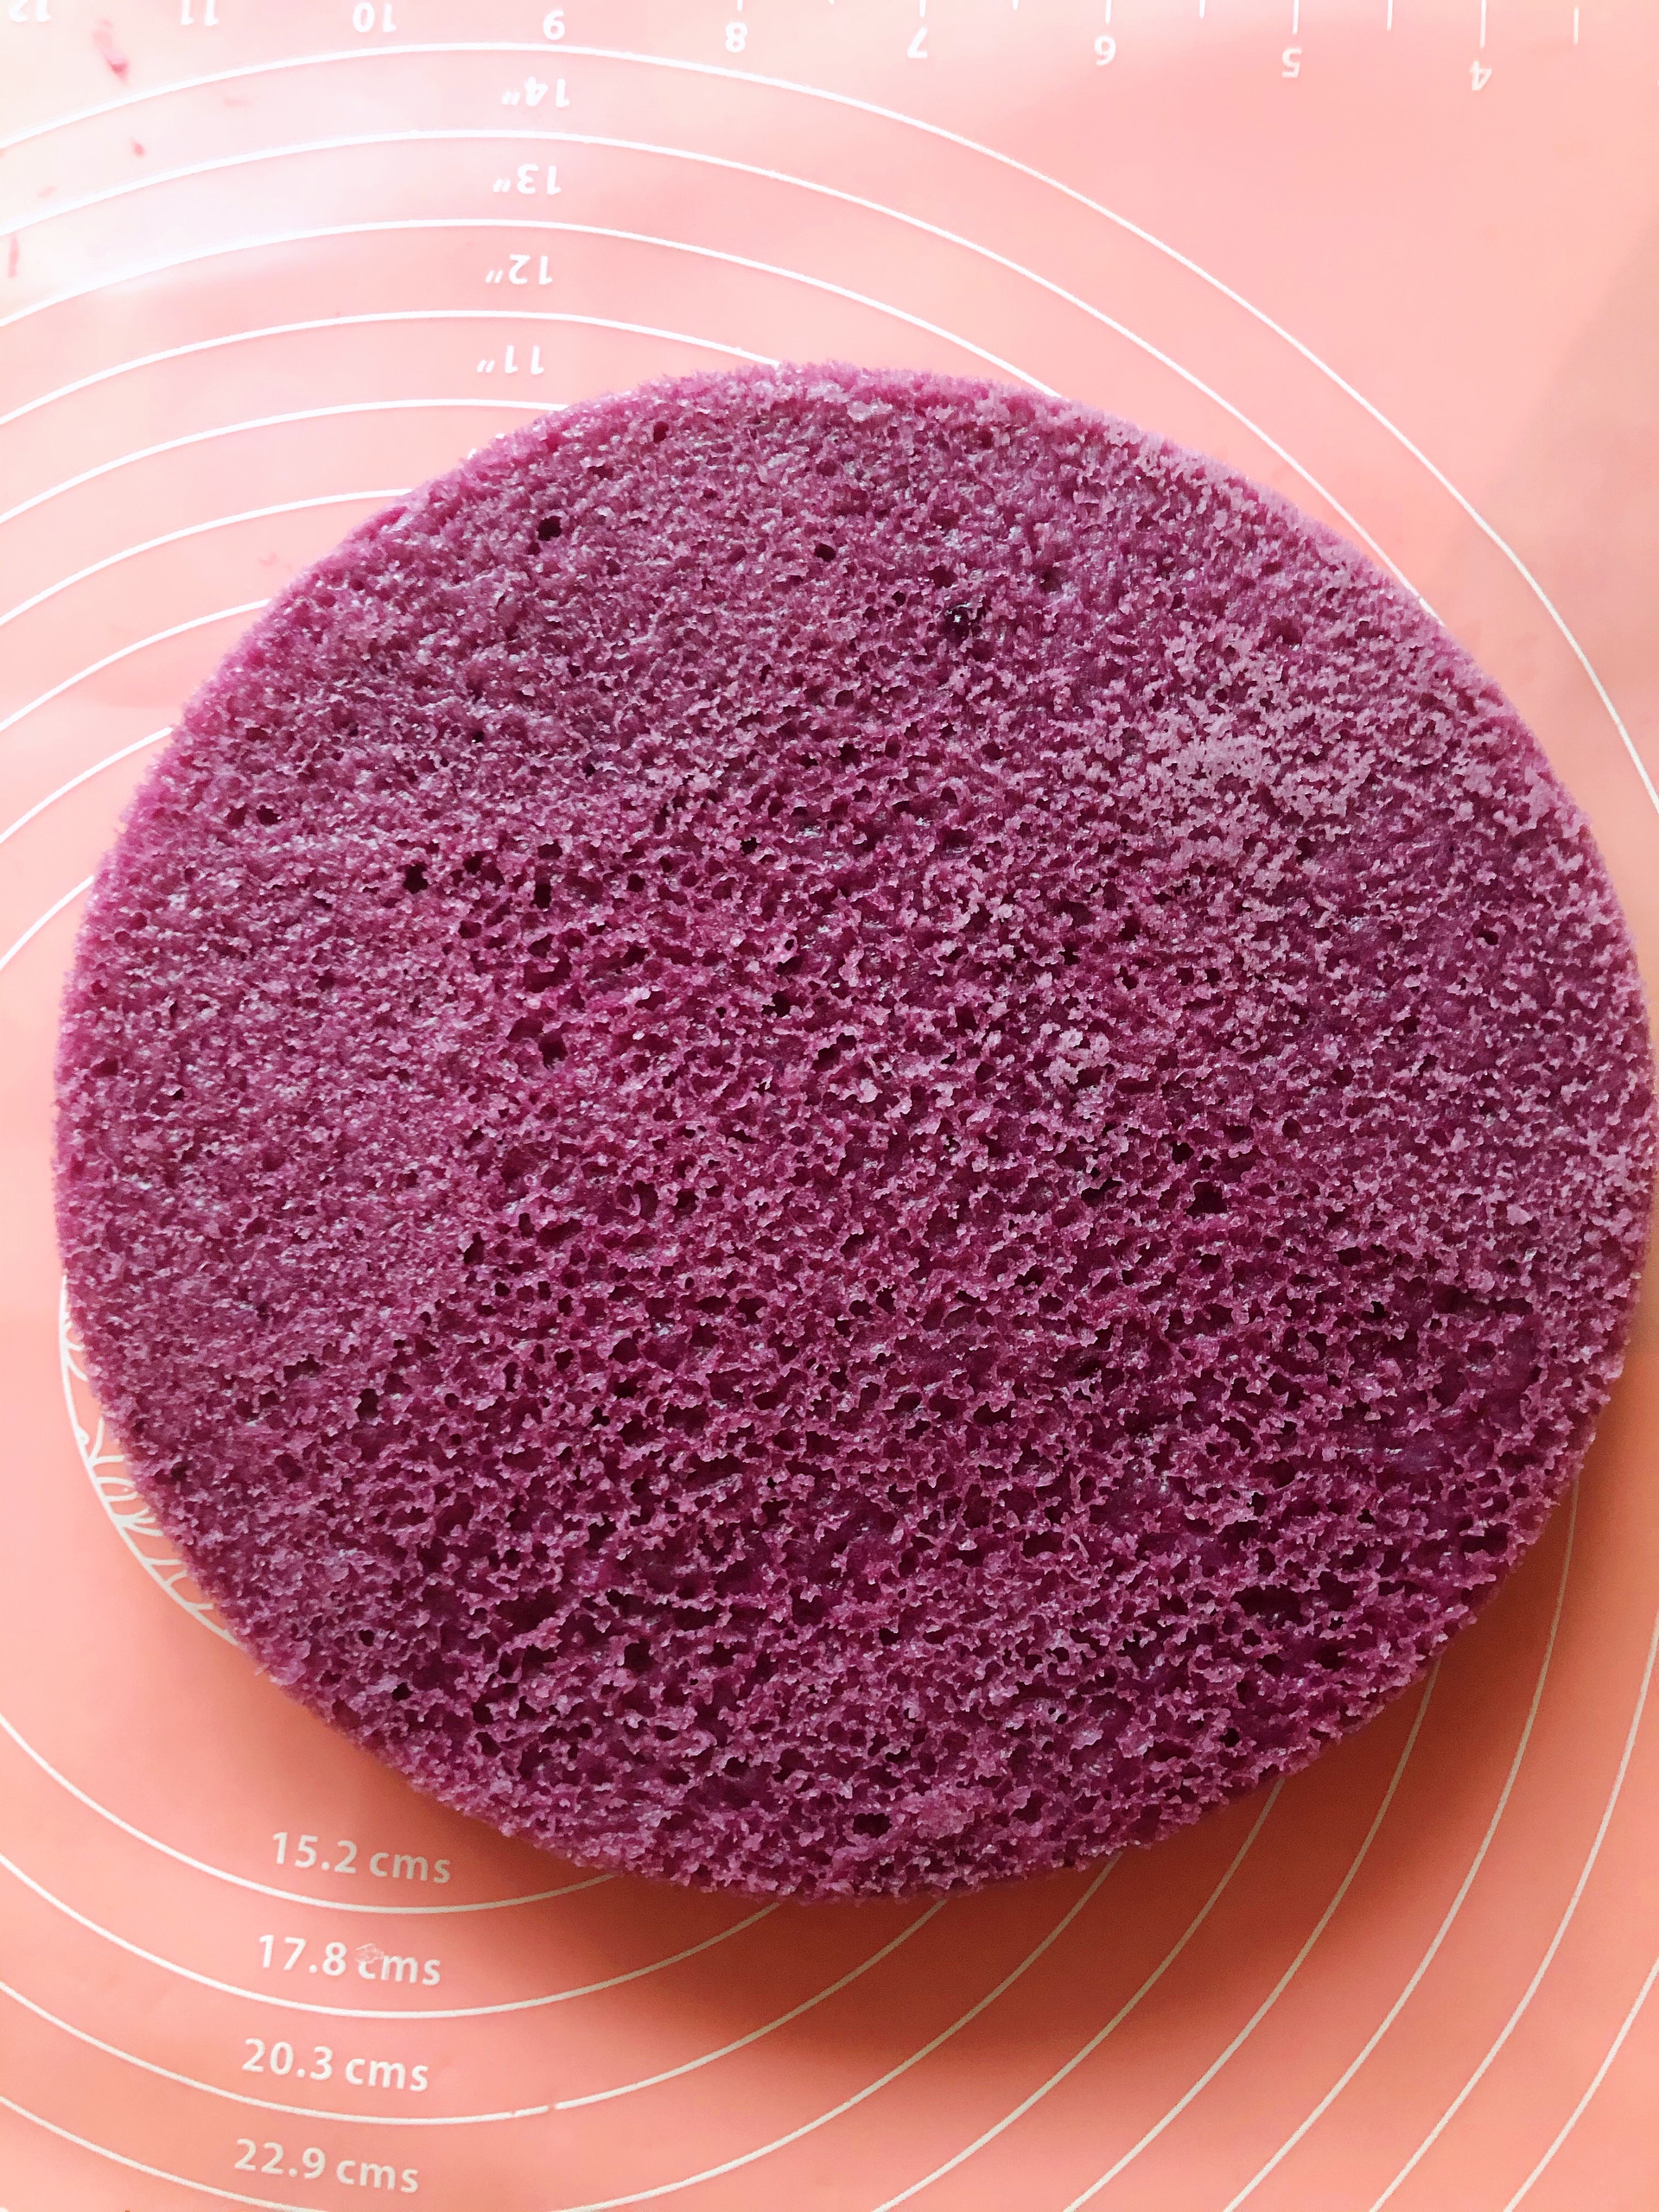 紫薯马拉糕